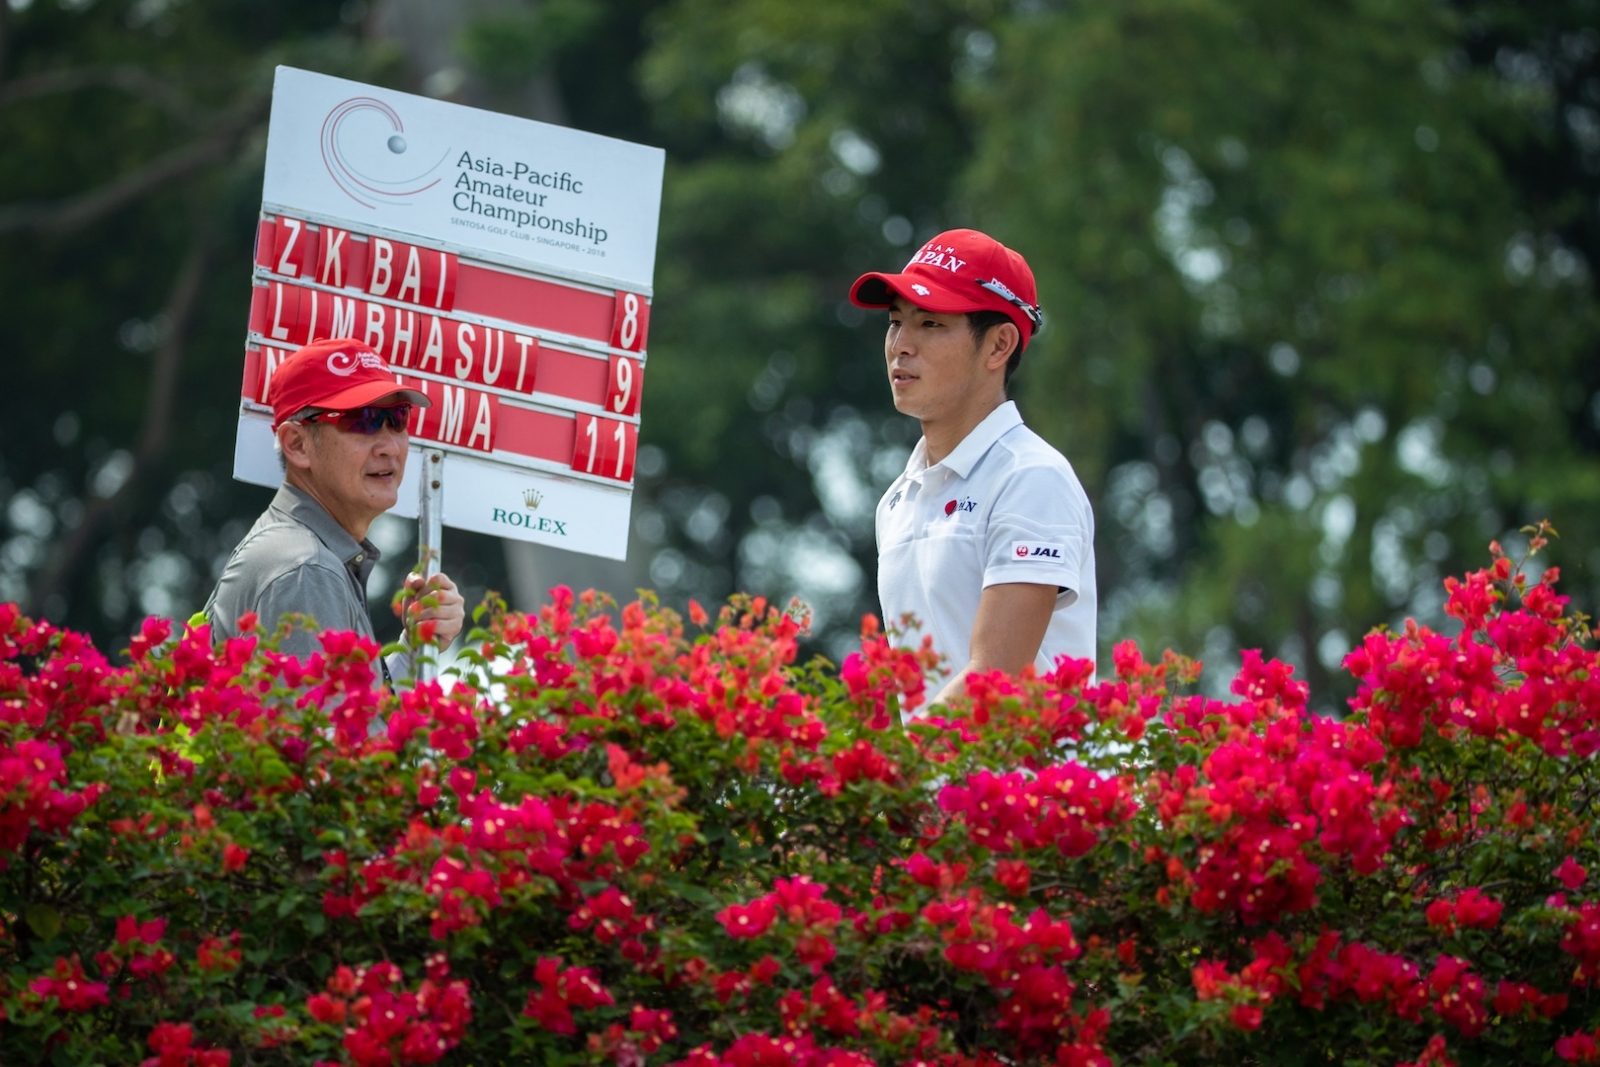 獲得亞運會個人高爾夫金牌的日本選手中島啟太(Keita Nakajima)獲得邀請參加明年的英國公開賽最後階段資格賽。